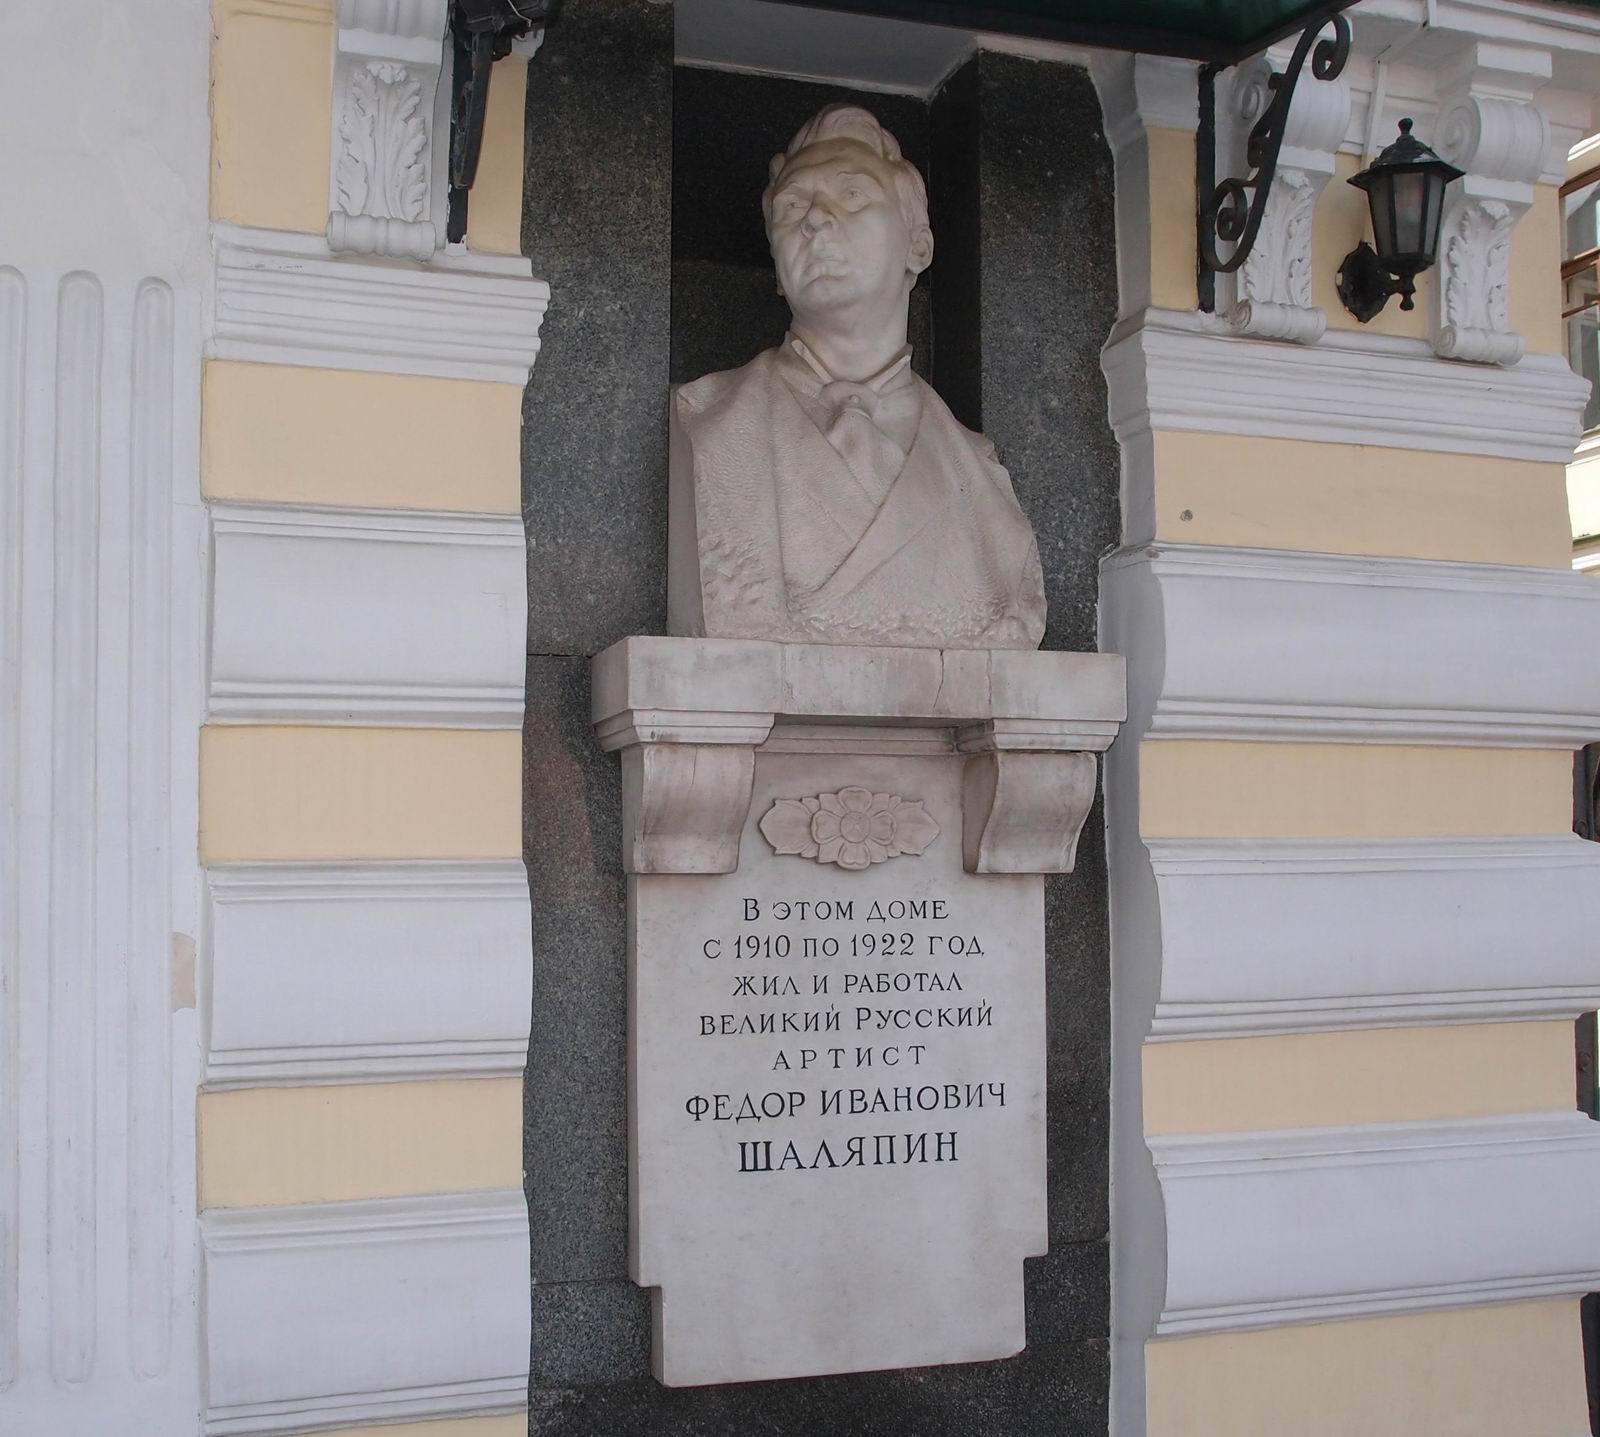 Мемориальная доска Шаляпину Ф.И. (1873–1938), ск. А.Е.Елецкий, на Новинском бульваре, дом 25, открыта 19.8.1957.